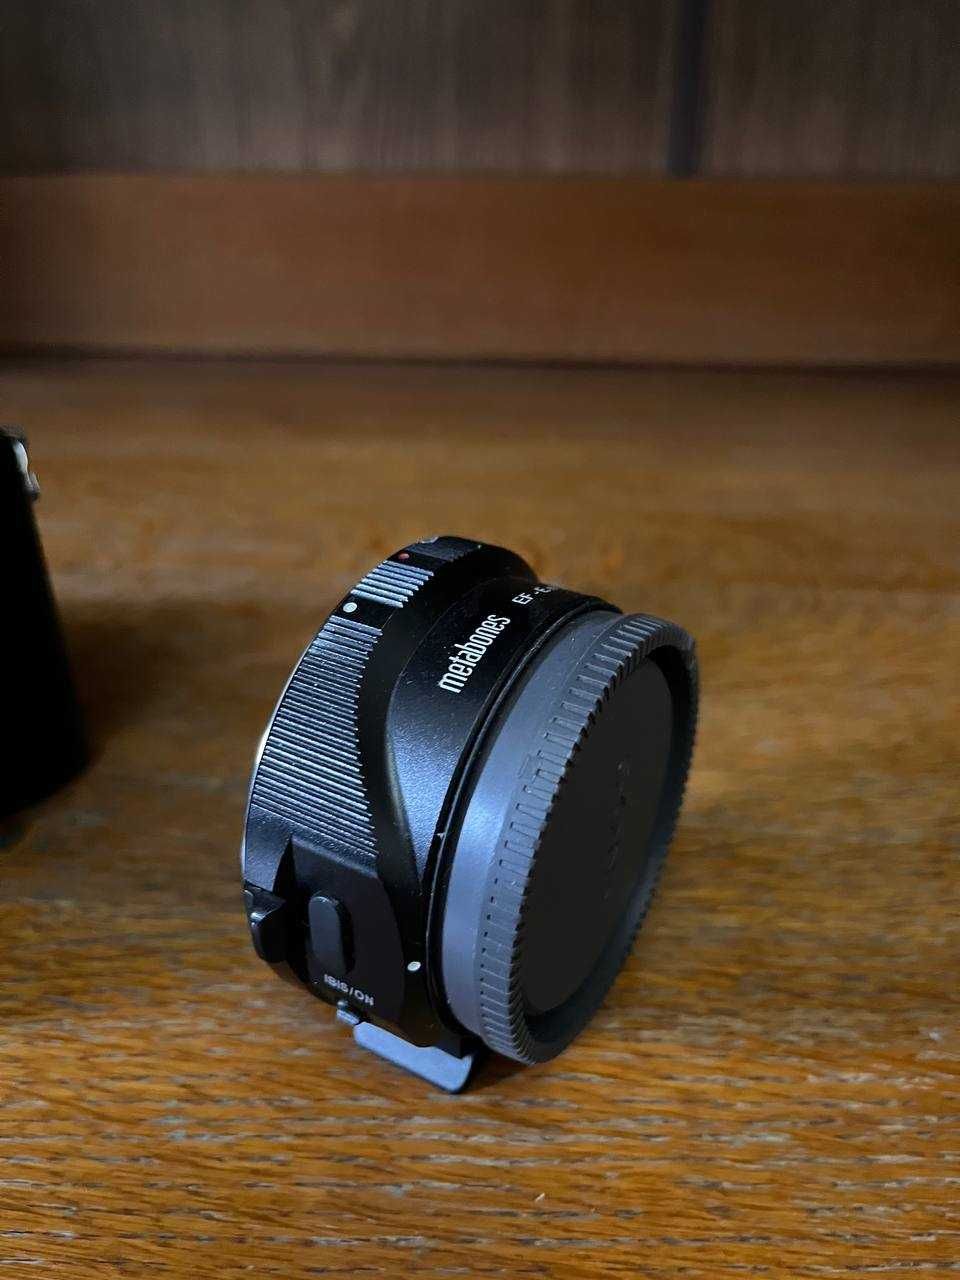 Объектив Canon - Sony metabones